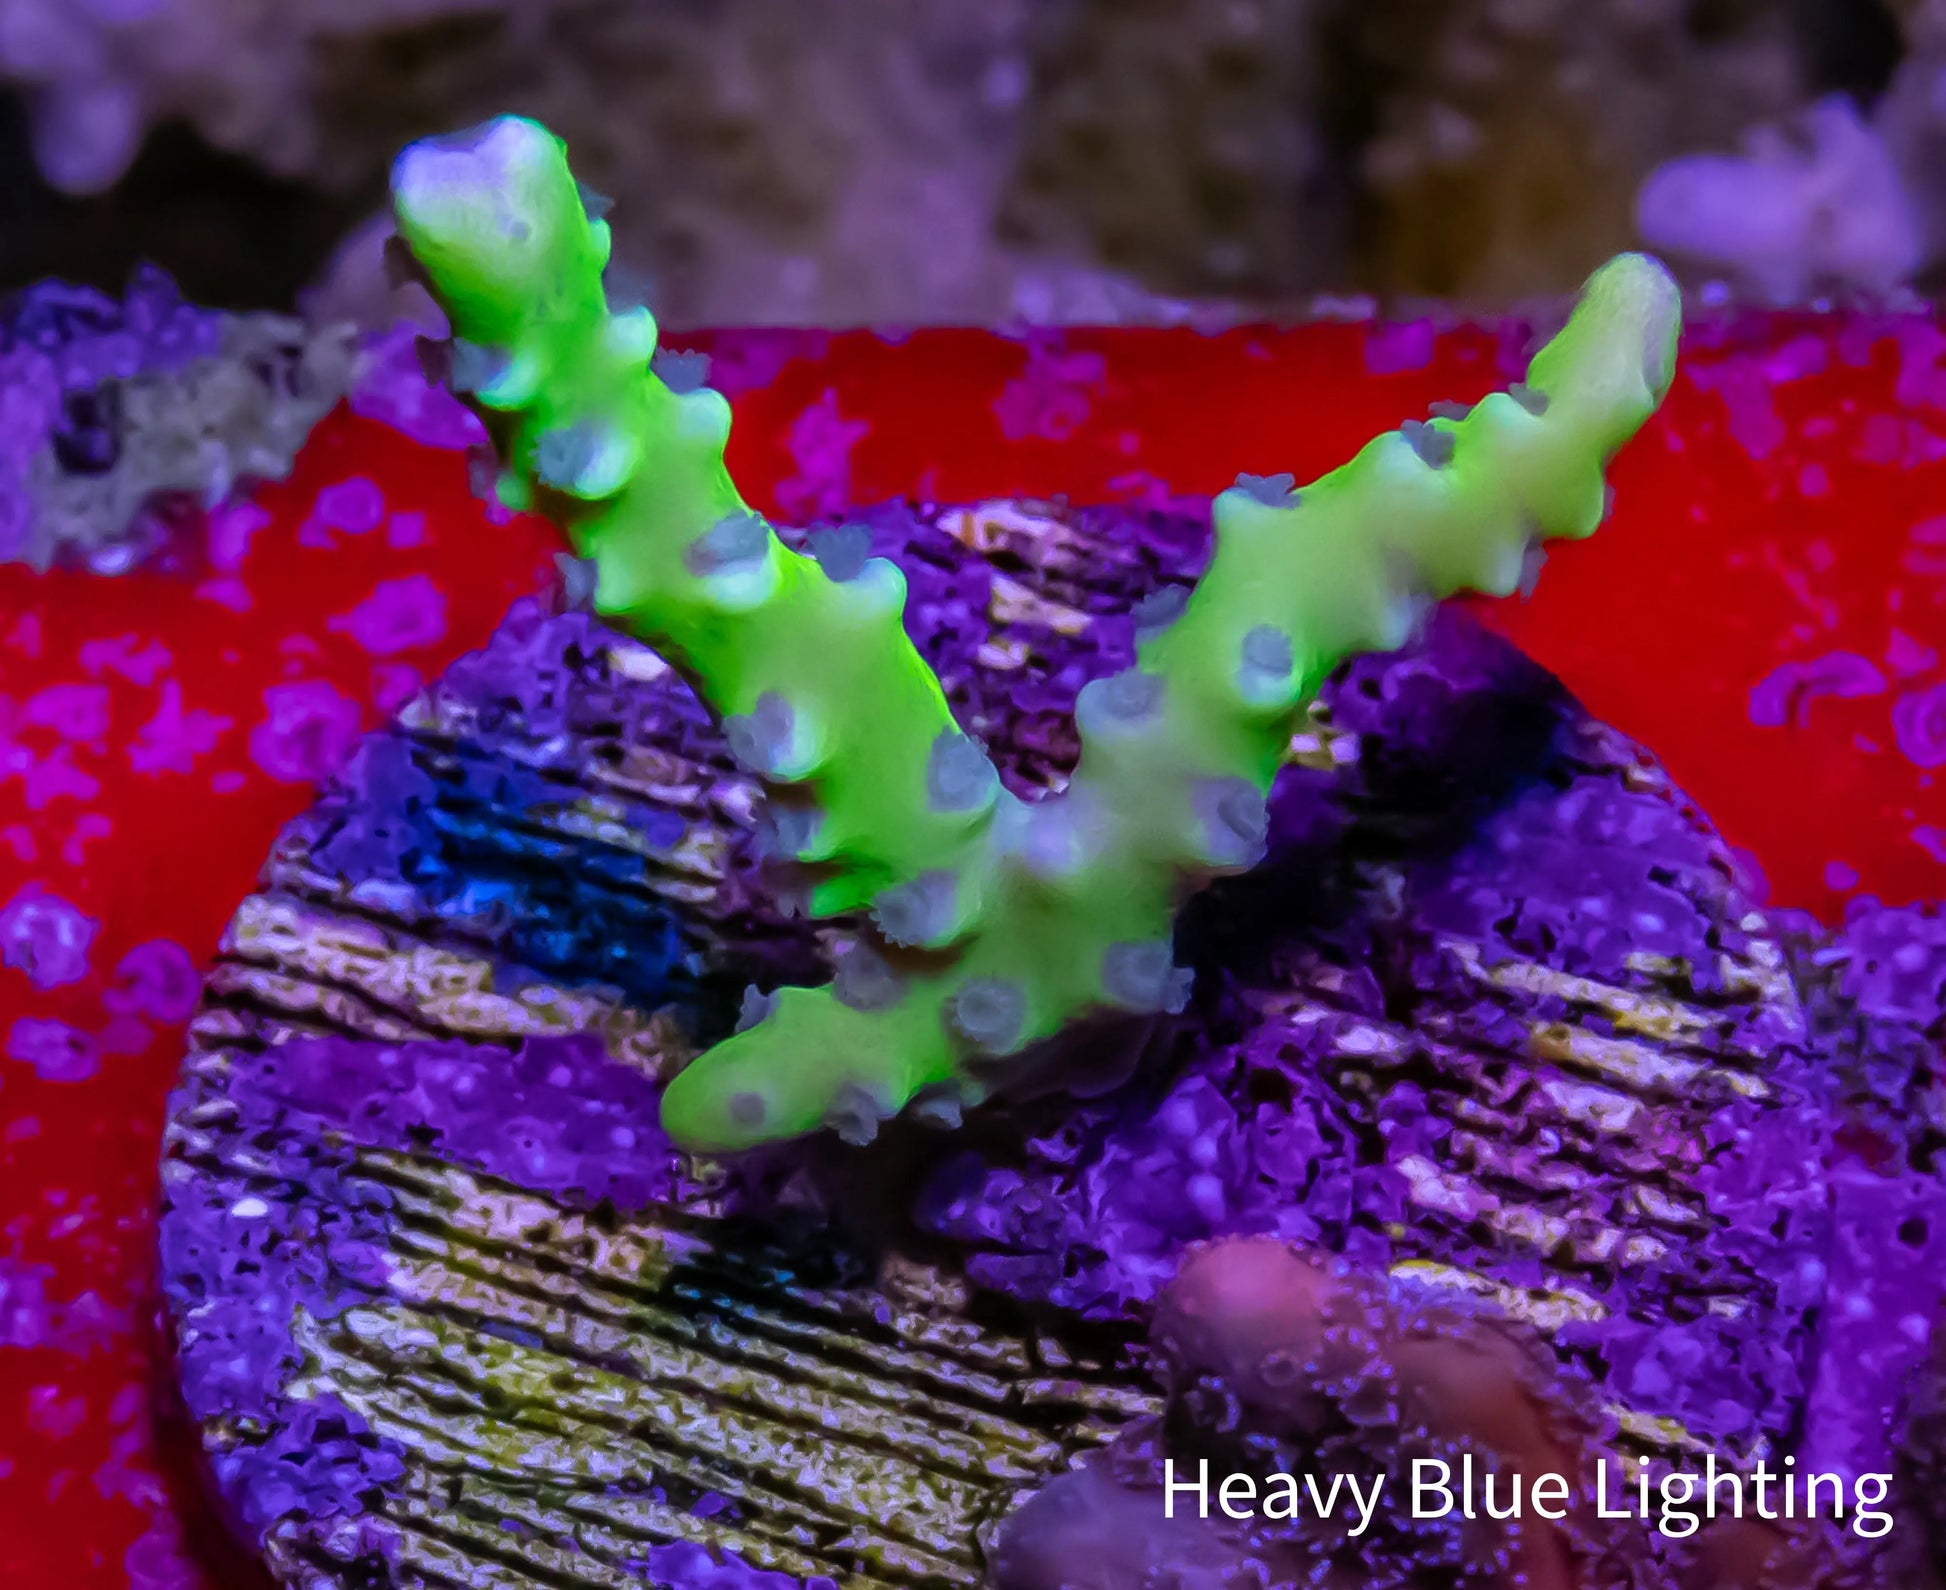 Anacropora Coral- Green Goblin - Frag Anacropora Coral- Green Goblin - Frag SPS Anacropora Coral- Green Goblin - Frag Zeo Box Reef